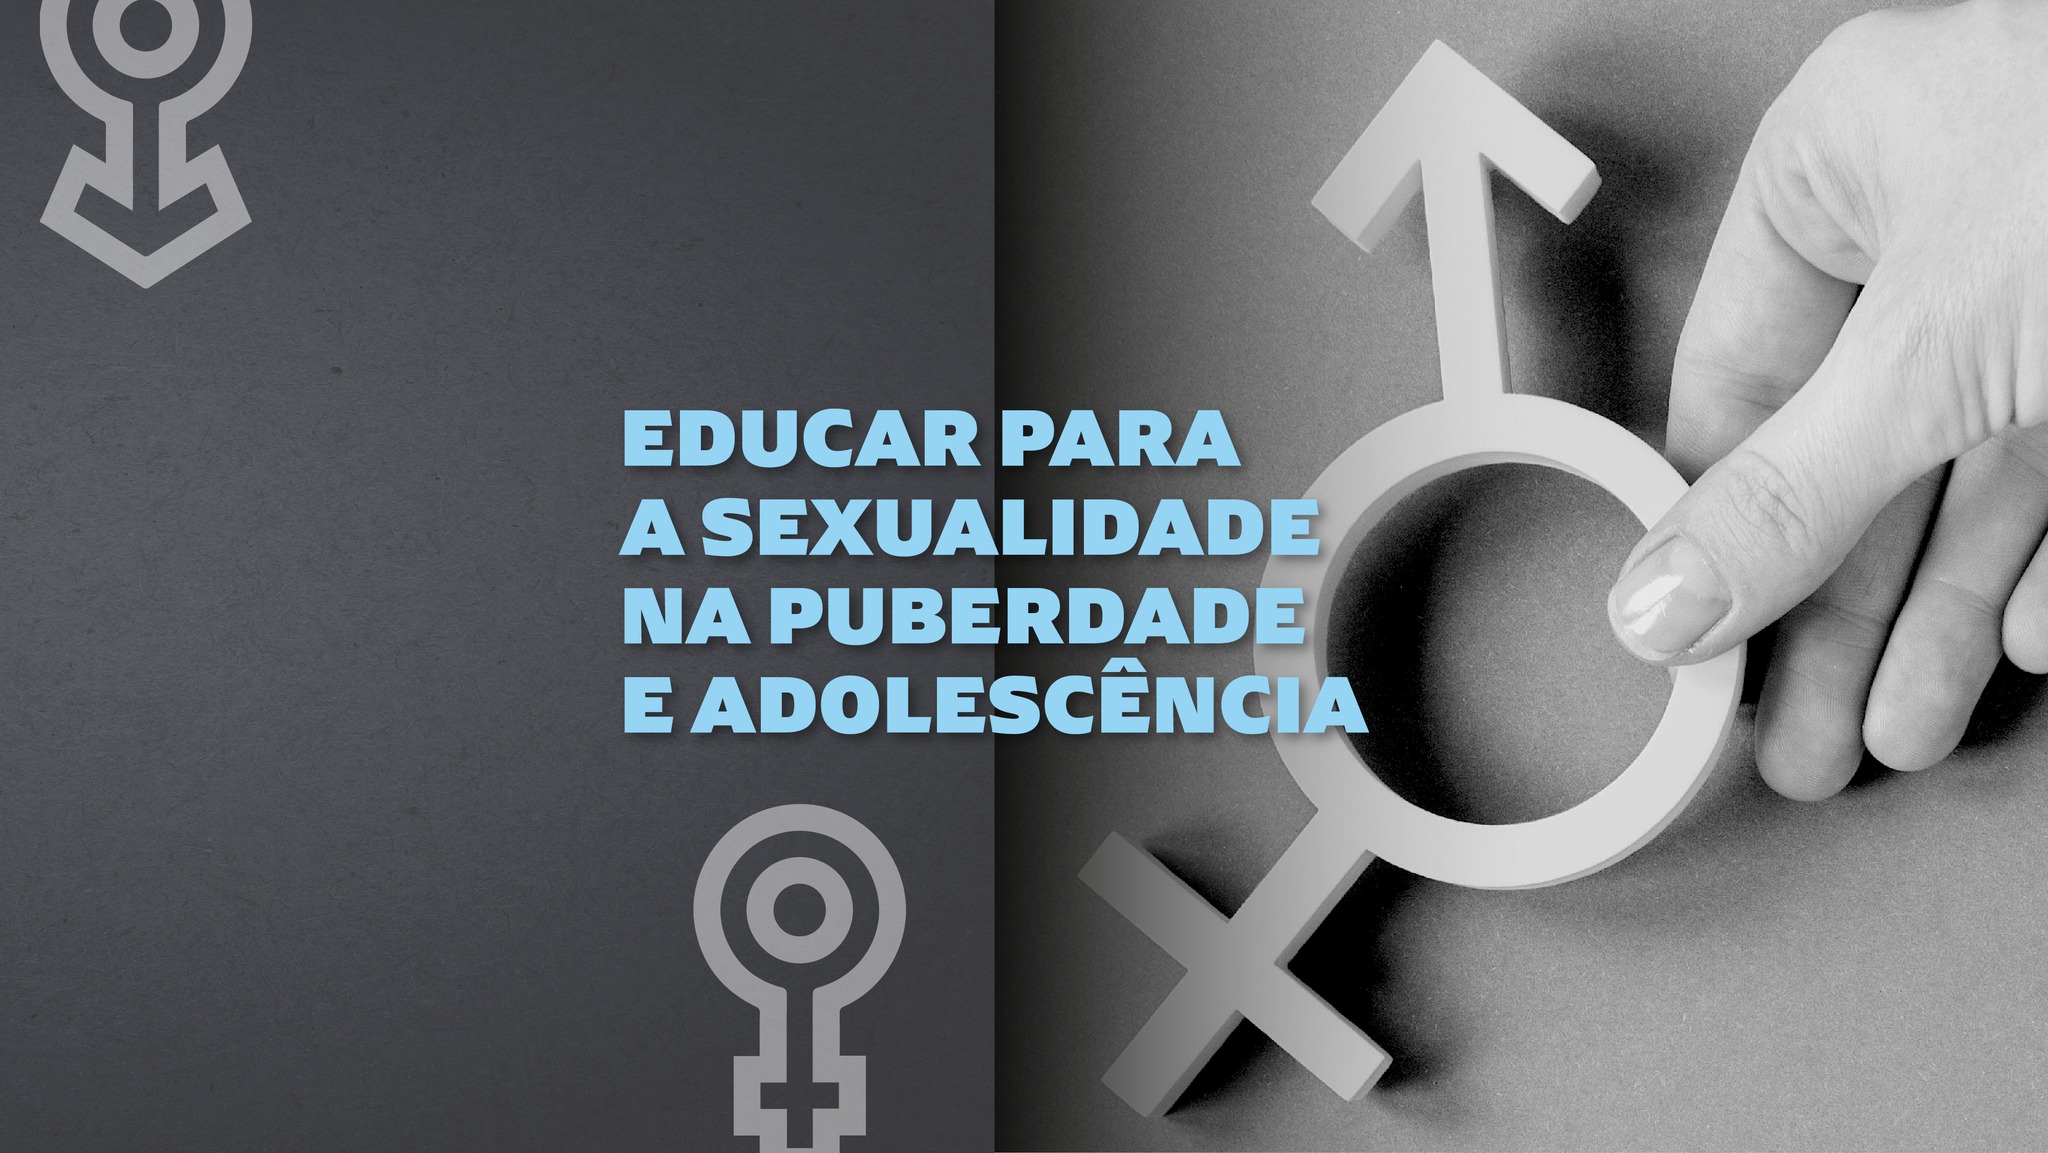 EDUCAR PARA A SEXUALIDADE NA PUBERDADE E ADOLESCÊNCIA